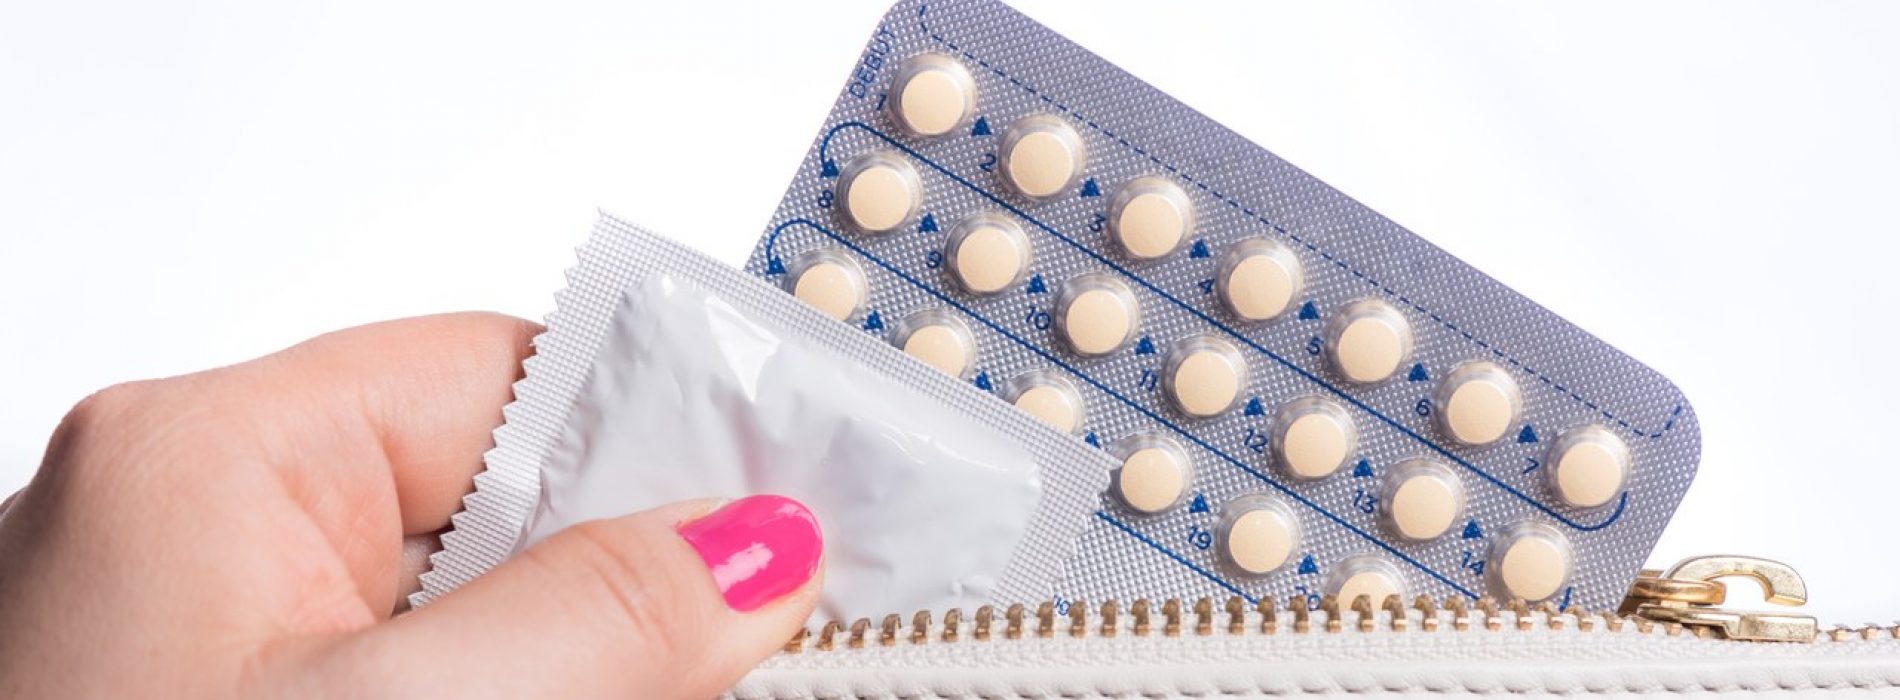 Ongelooflijke negatieve bijwerking van het nemen van de anticonceptiepil – plus 5 andere gezondheidsrisico’s onthuld